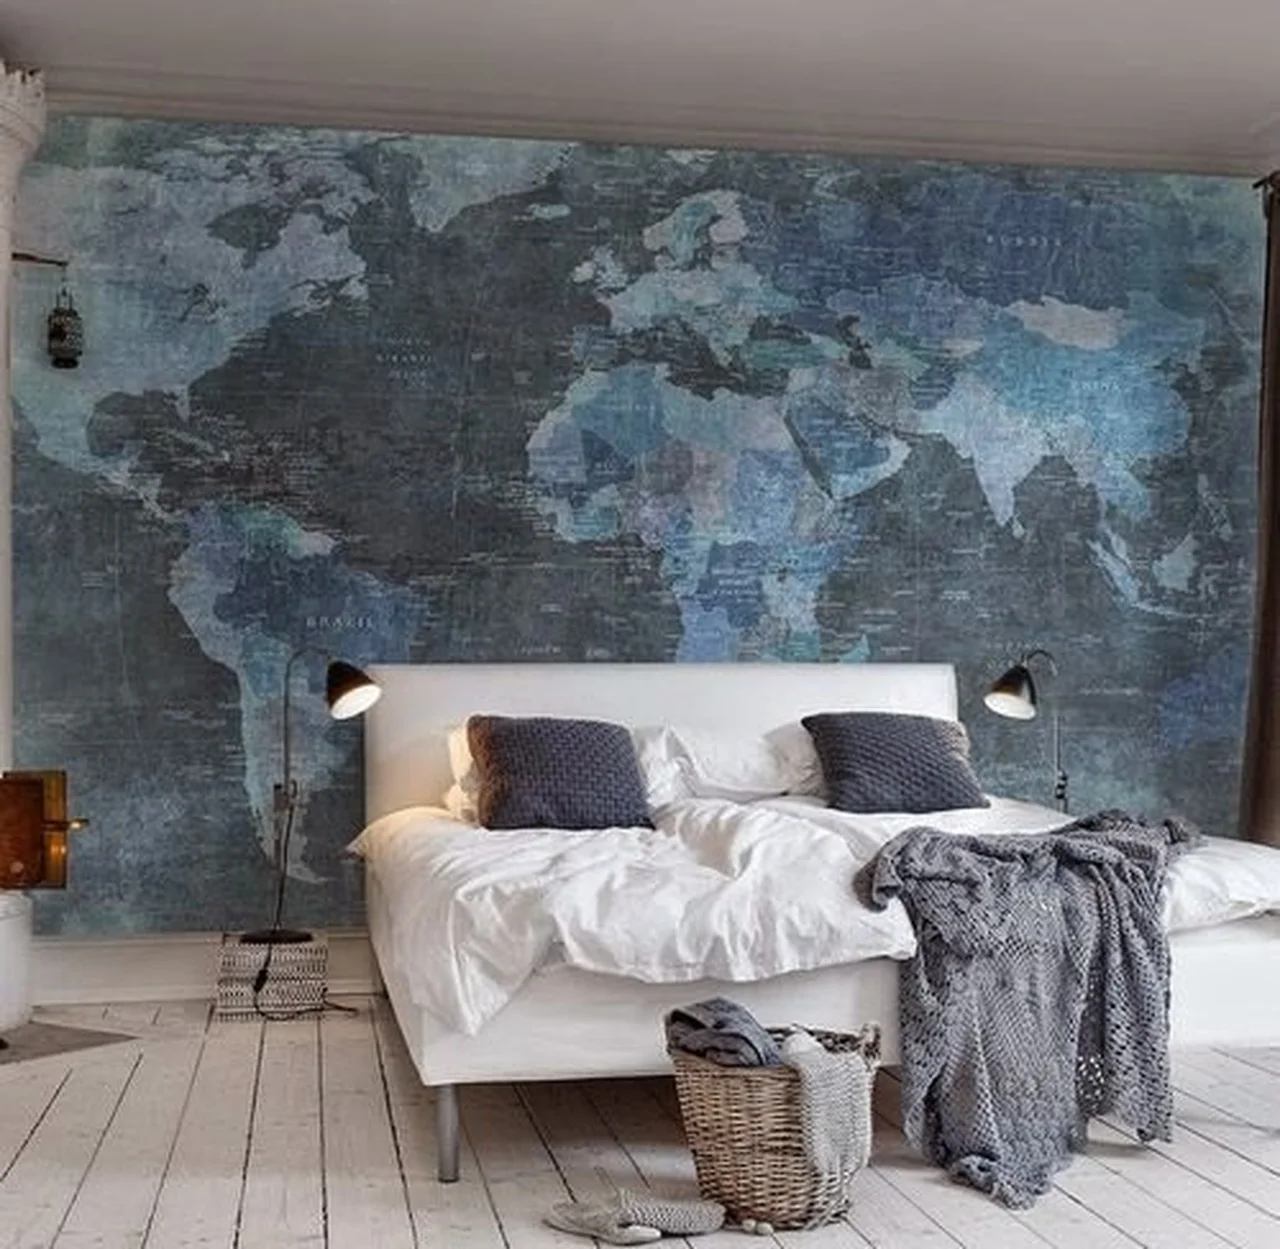 Aranżacja sypialni - mapa świata